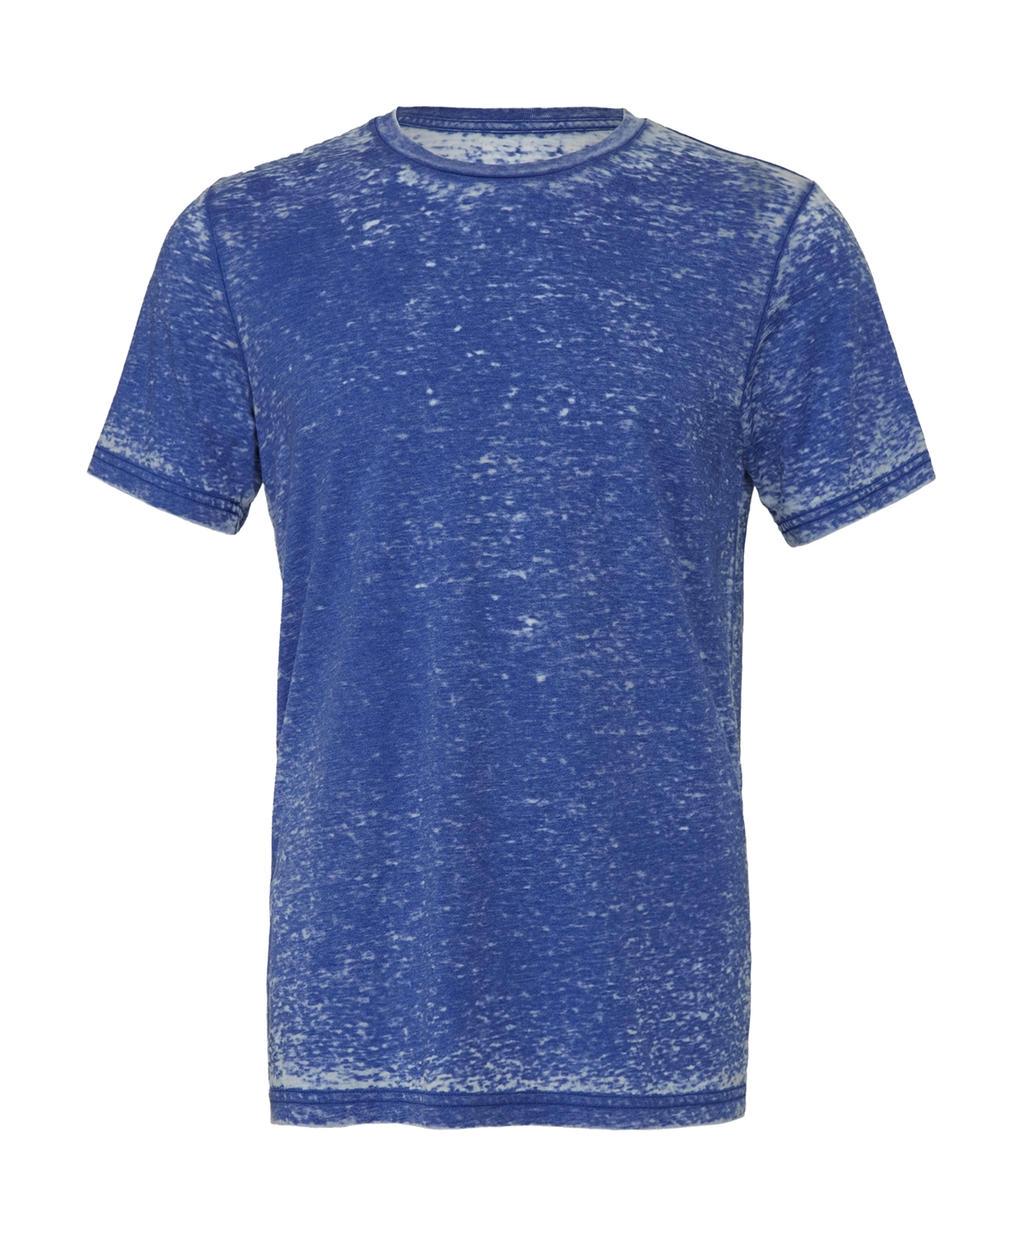 Unisex Poly-Cotton T-Shirt zum Besticken und Bedrucken in der Farbe True Royal Acid Wash mit Ihren Logo, Schriftzug oder Motiv.